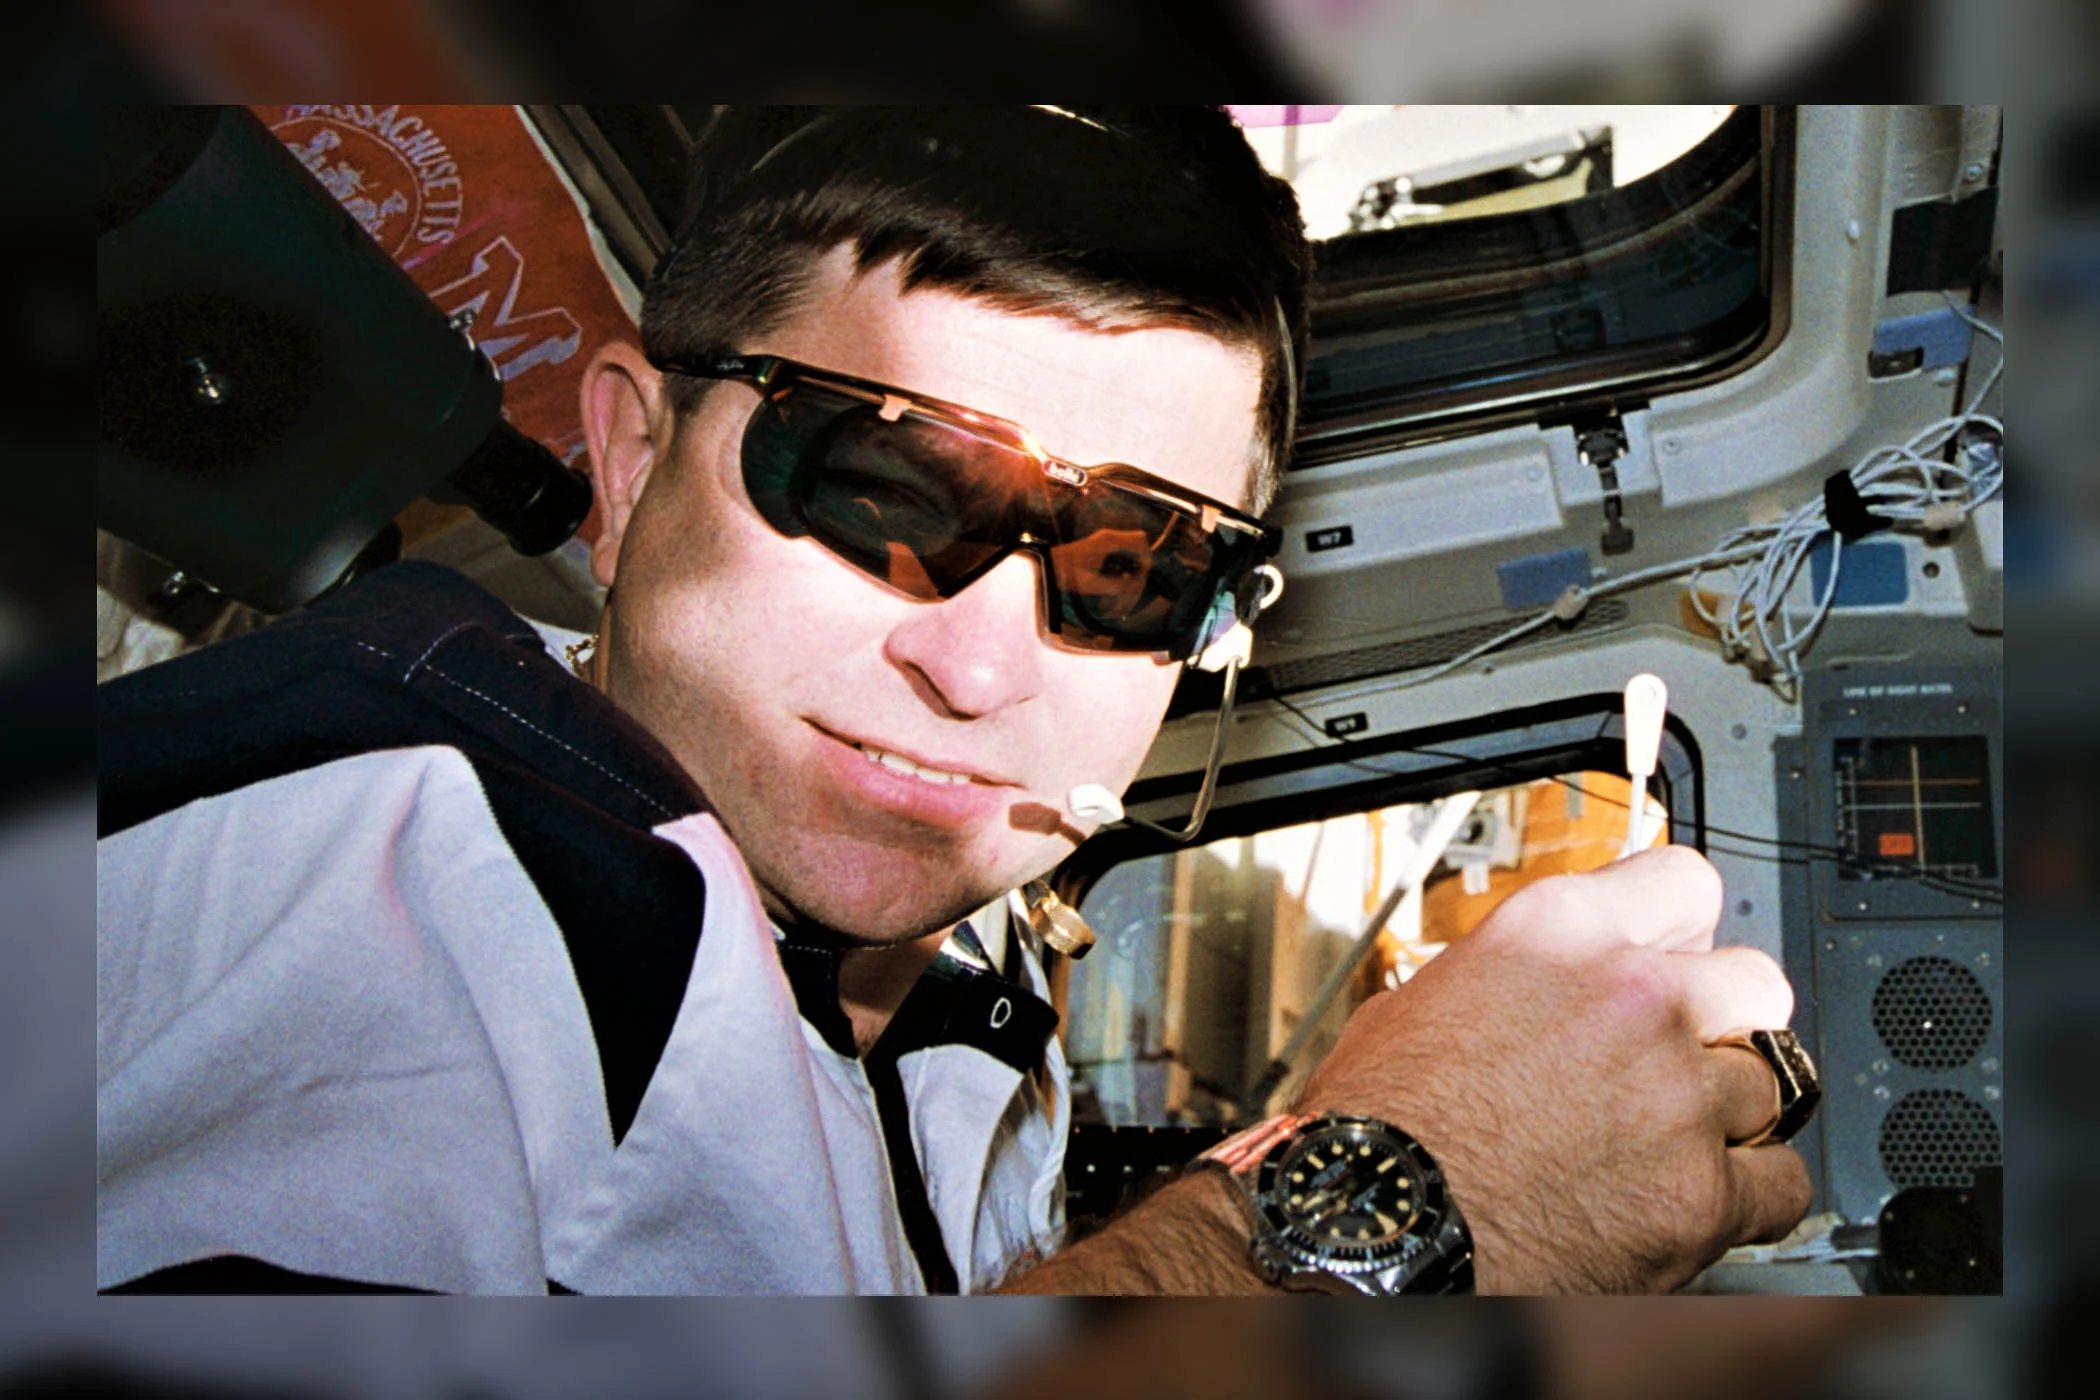 宇宙初のロレックス サブマリーナー - ケネス D. キャメロン宇宙飛行士 NASA - ロレックス サブマリーナー デイト レッド 1680 スペース 1995